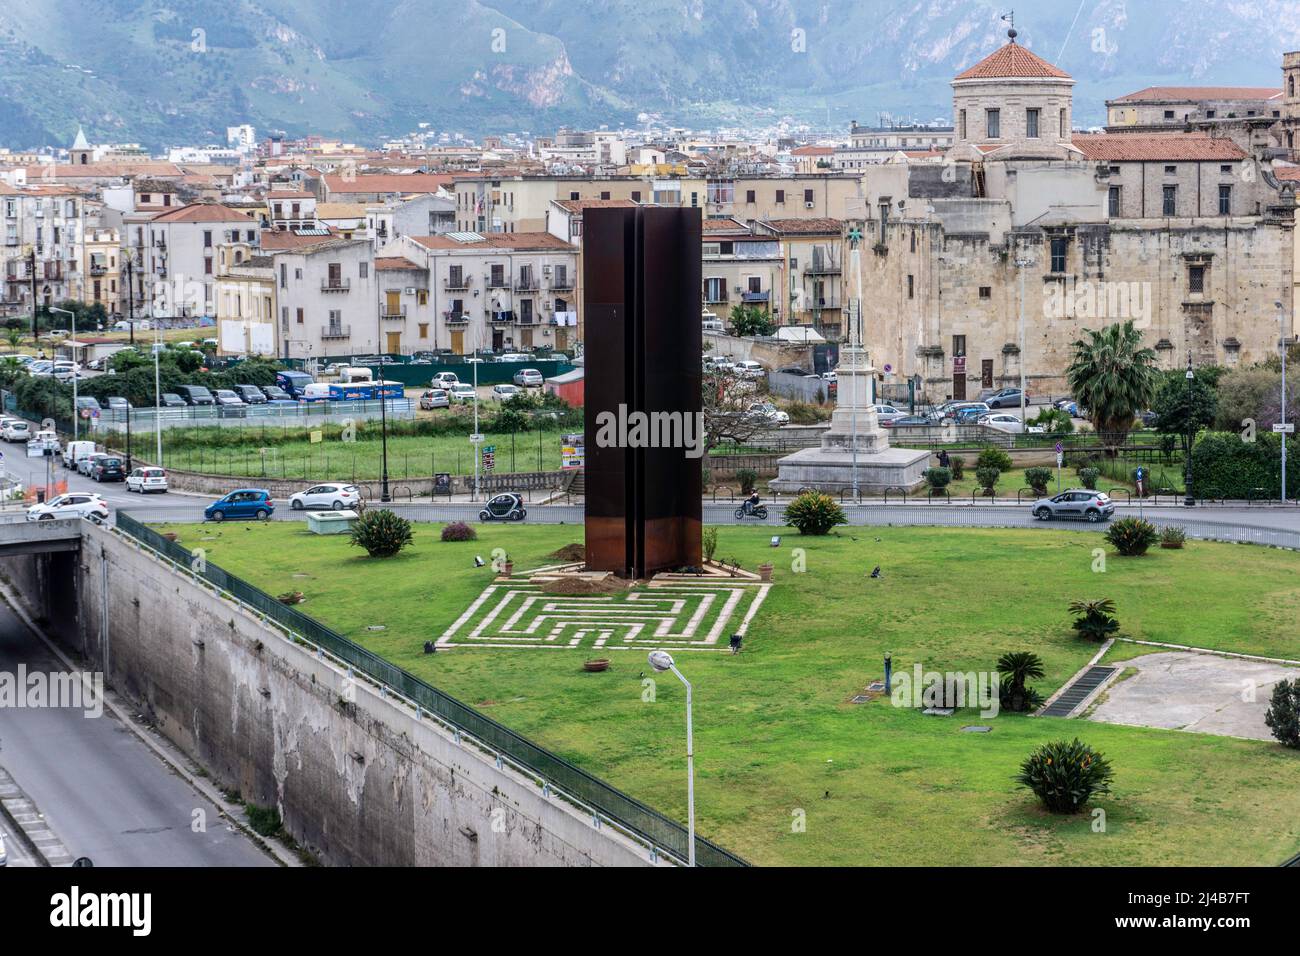 Il monumento alle vittime della lotta contro la mafia in Piazza XIII Vittime, Palermo, Sicilia, Italia. Progettato dallo scultore Mario Pecoraino Foto Stock